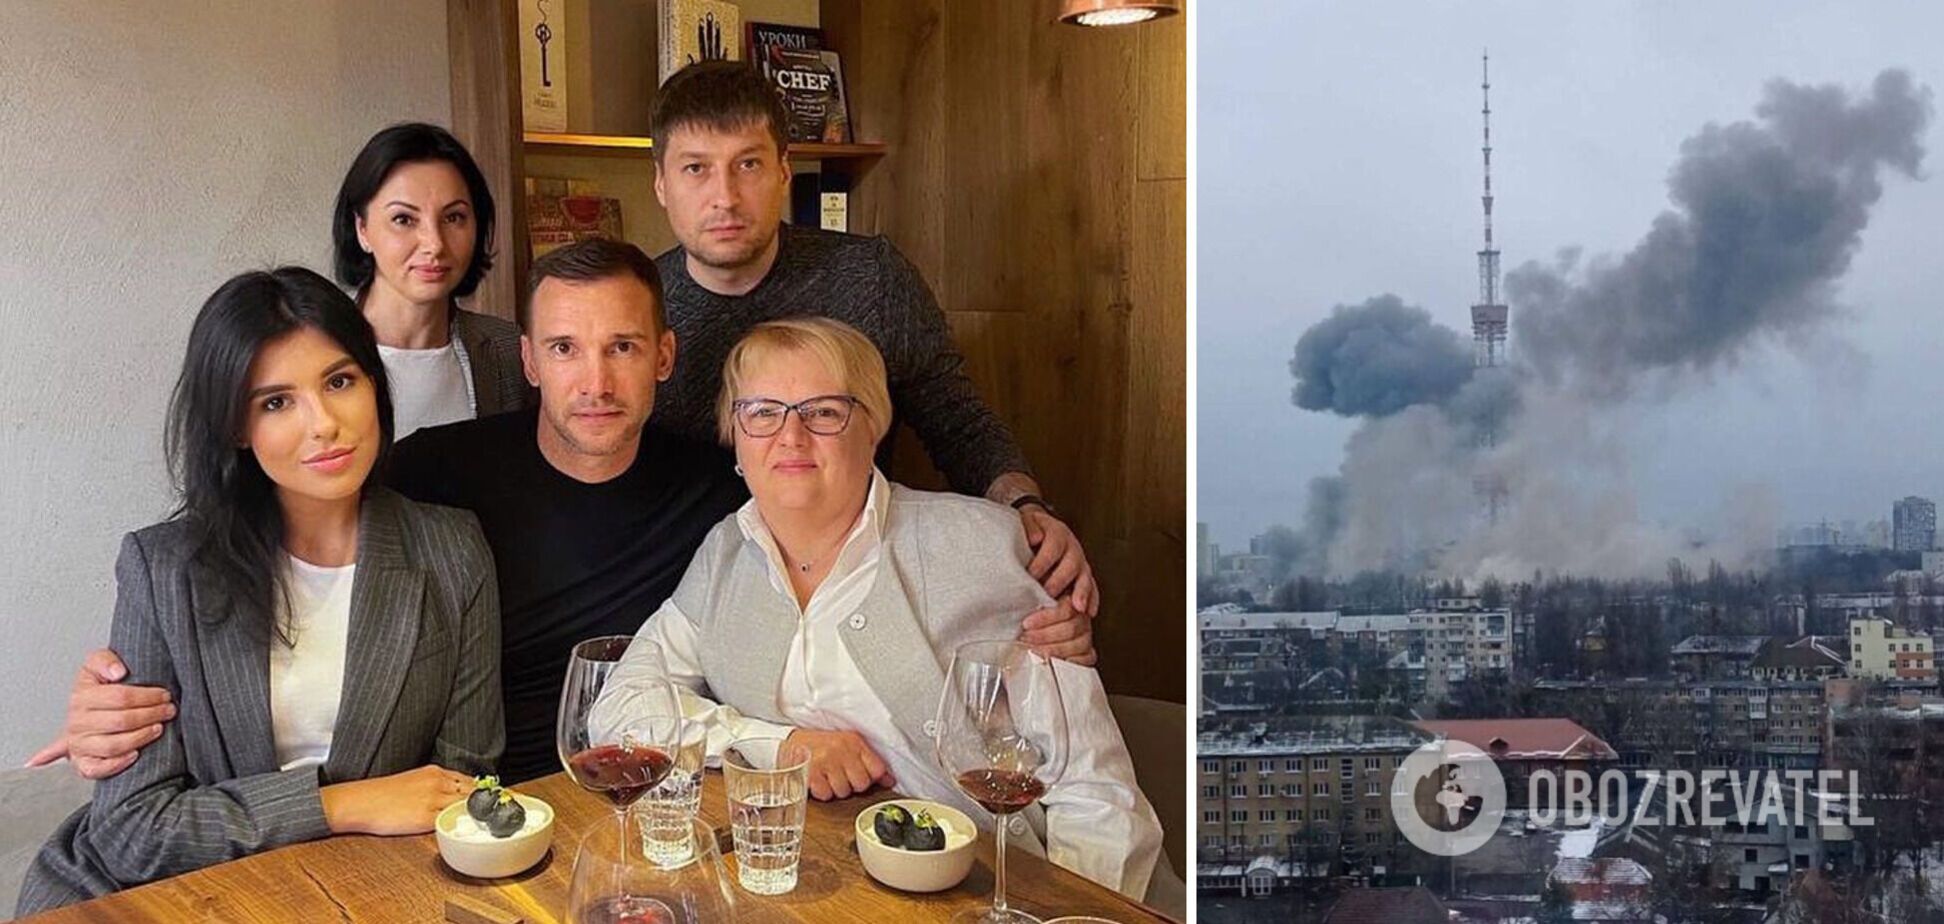 Мама и сестра Шевченко остались в Киеве и не уедут: они организовываются, уходят в укрытия, пытаются передавать еду